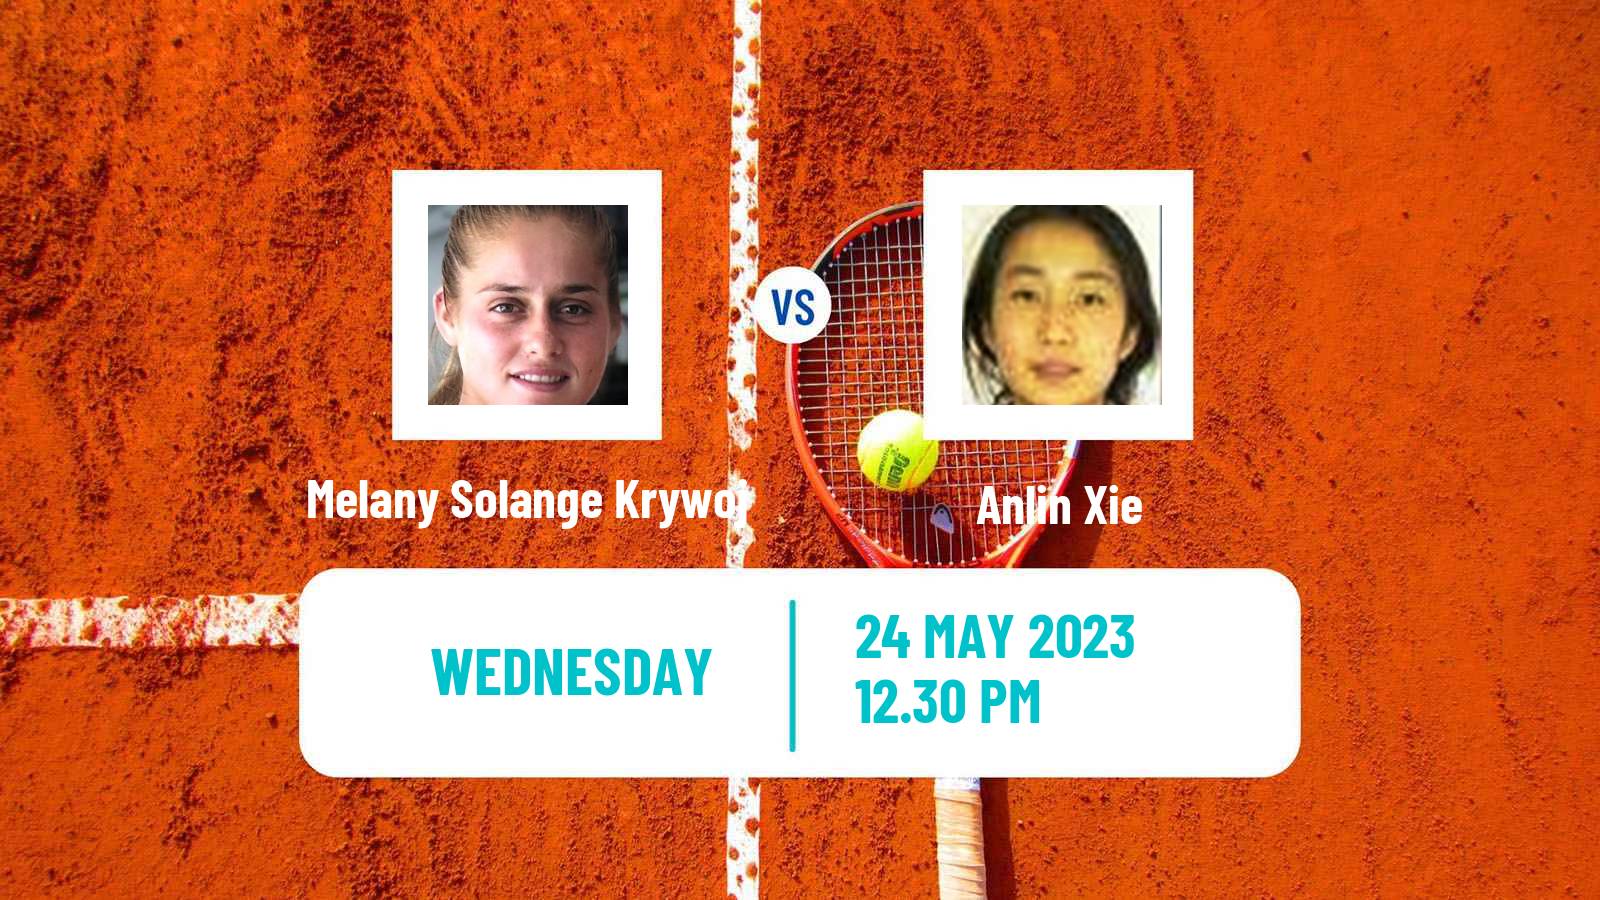 Tennis ITF W15 Huntsville Al Women Melany Solange Krywoj - Anlin Xie